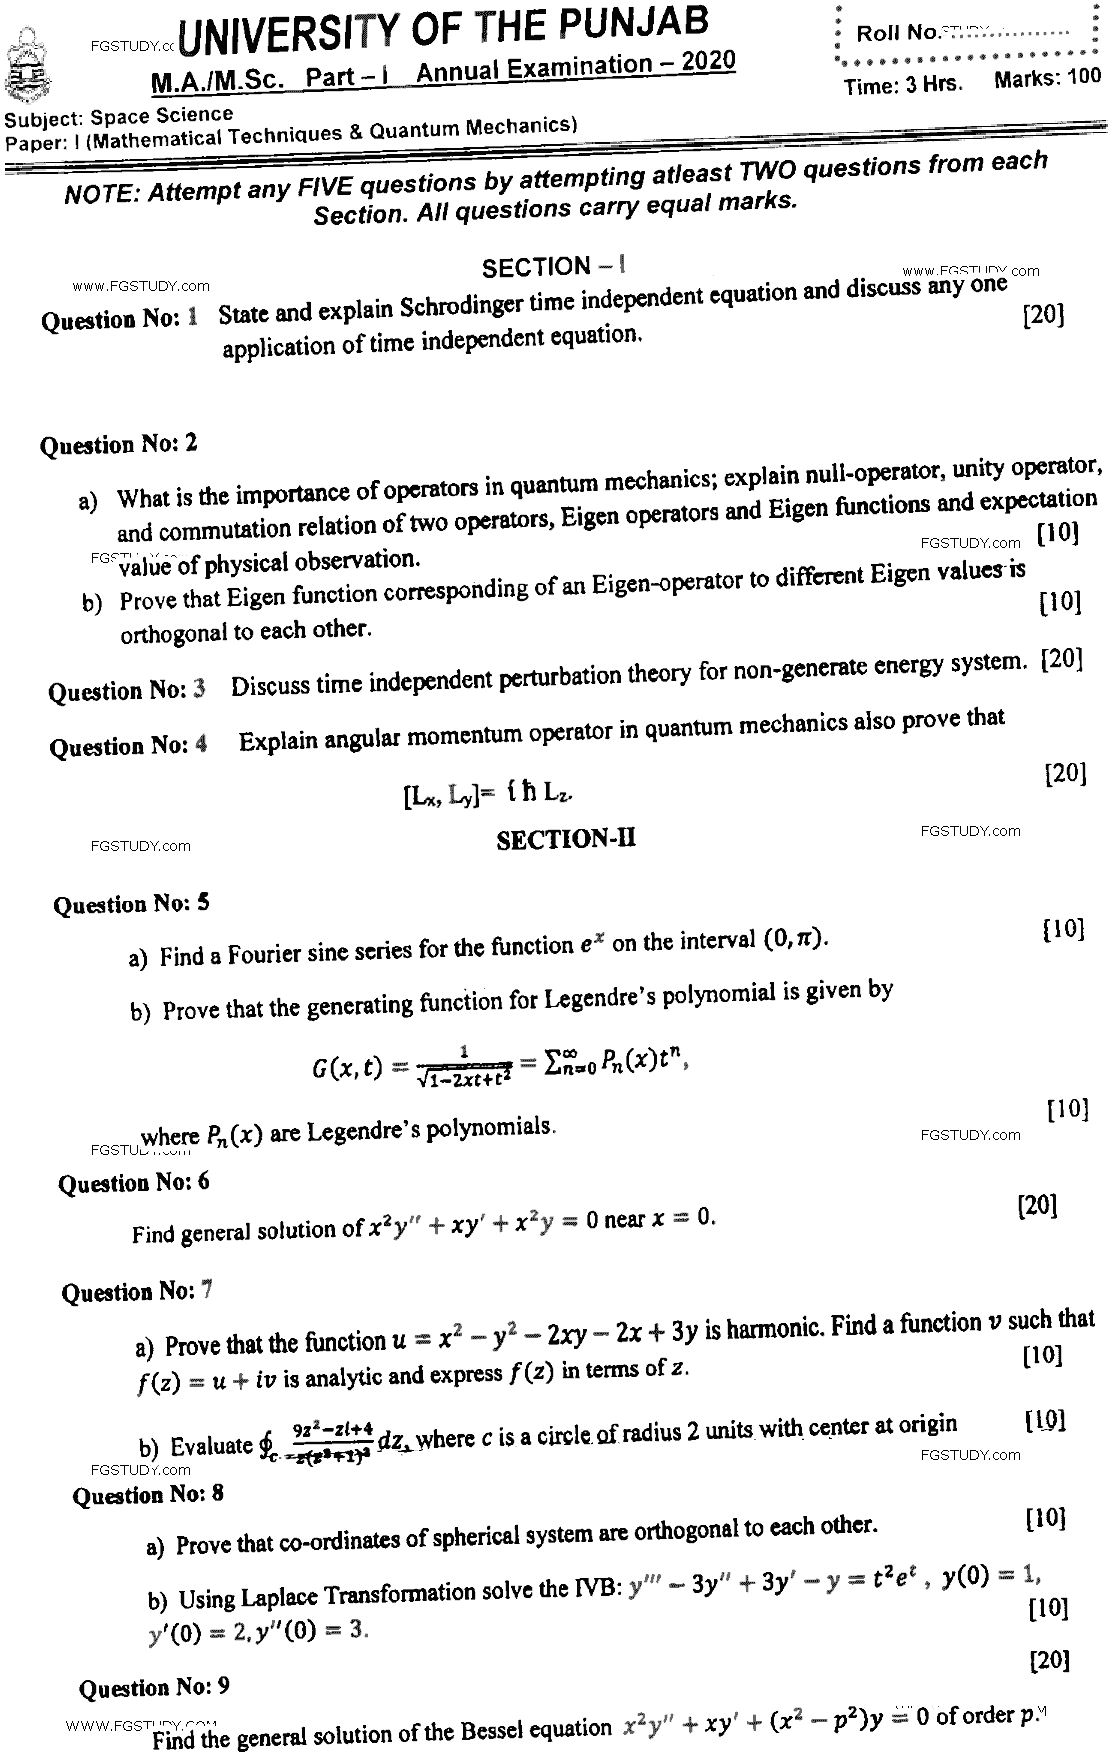 MSc Part 1 Space Science Mathematical Techniques And Quantum Mechanics Past Paper 2020 Punjab University Subjective